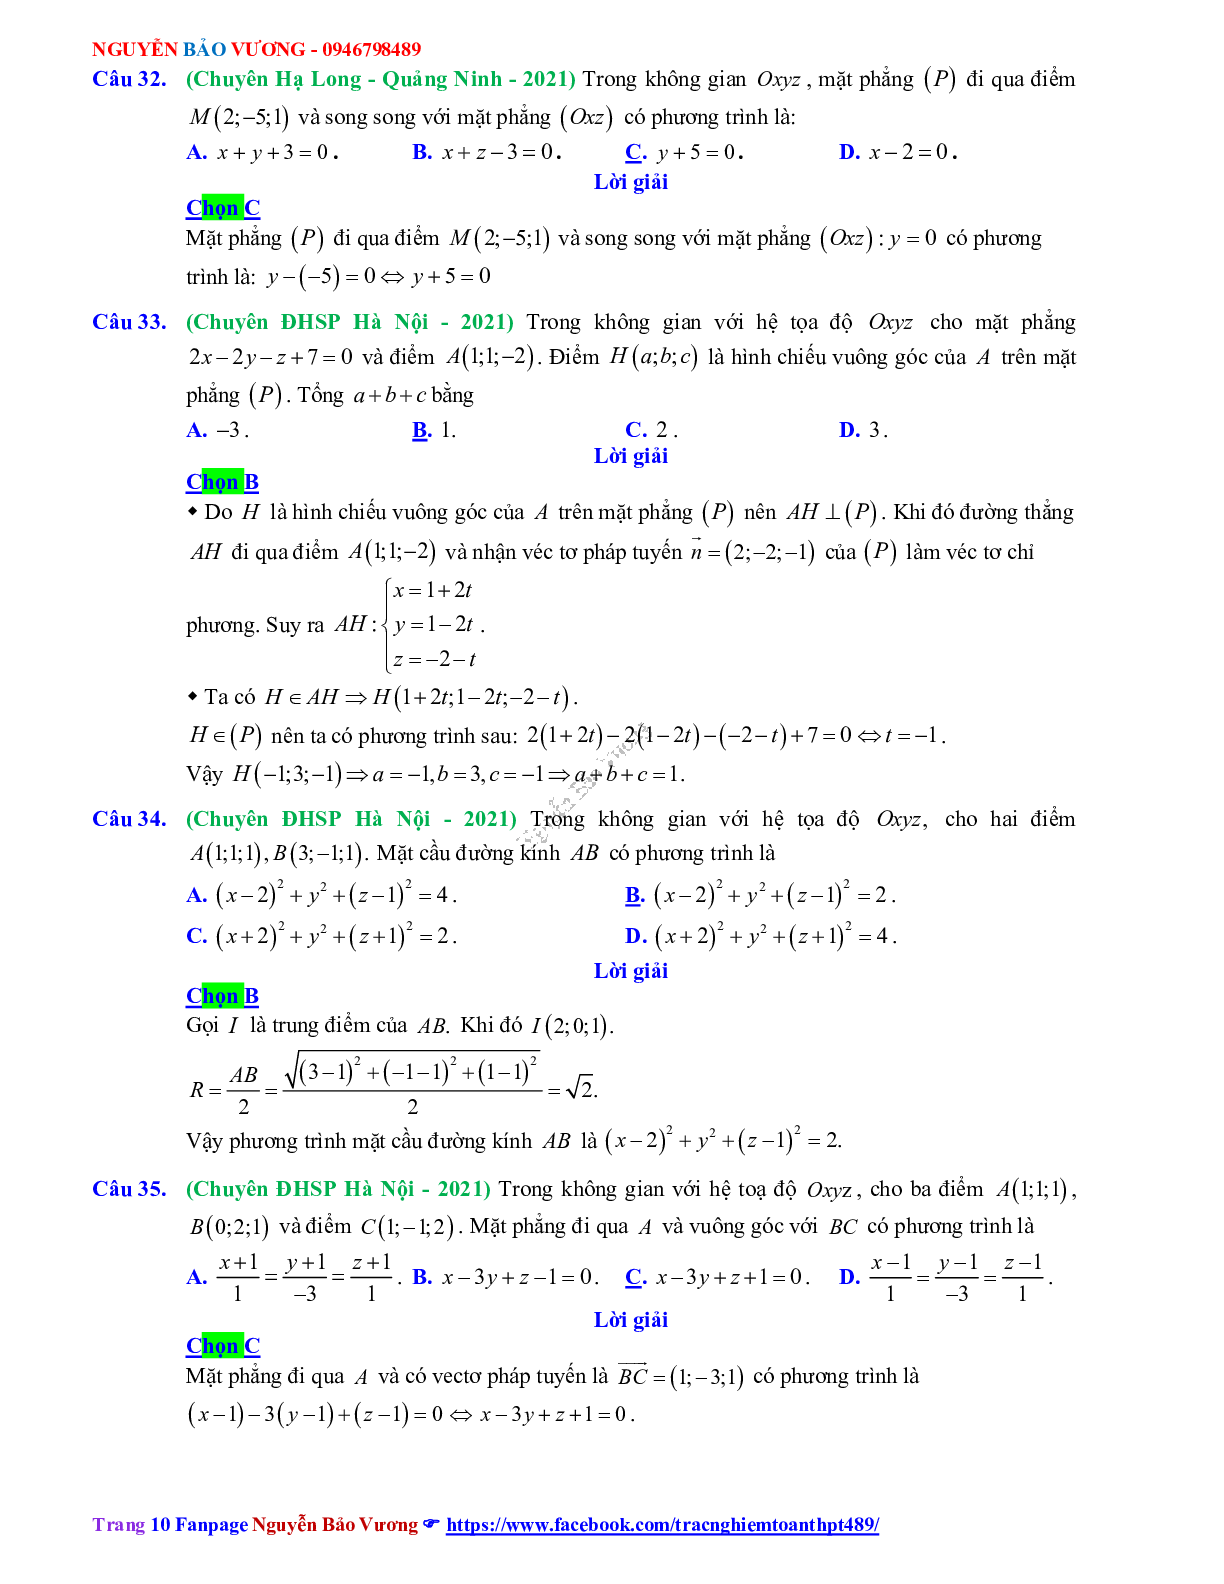 Trắc nghiệm Ôn thi THPT QG Toán 12: Đáp án phương pháp tọa độ trong không gian mức độ thông hiểu (trang 10)